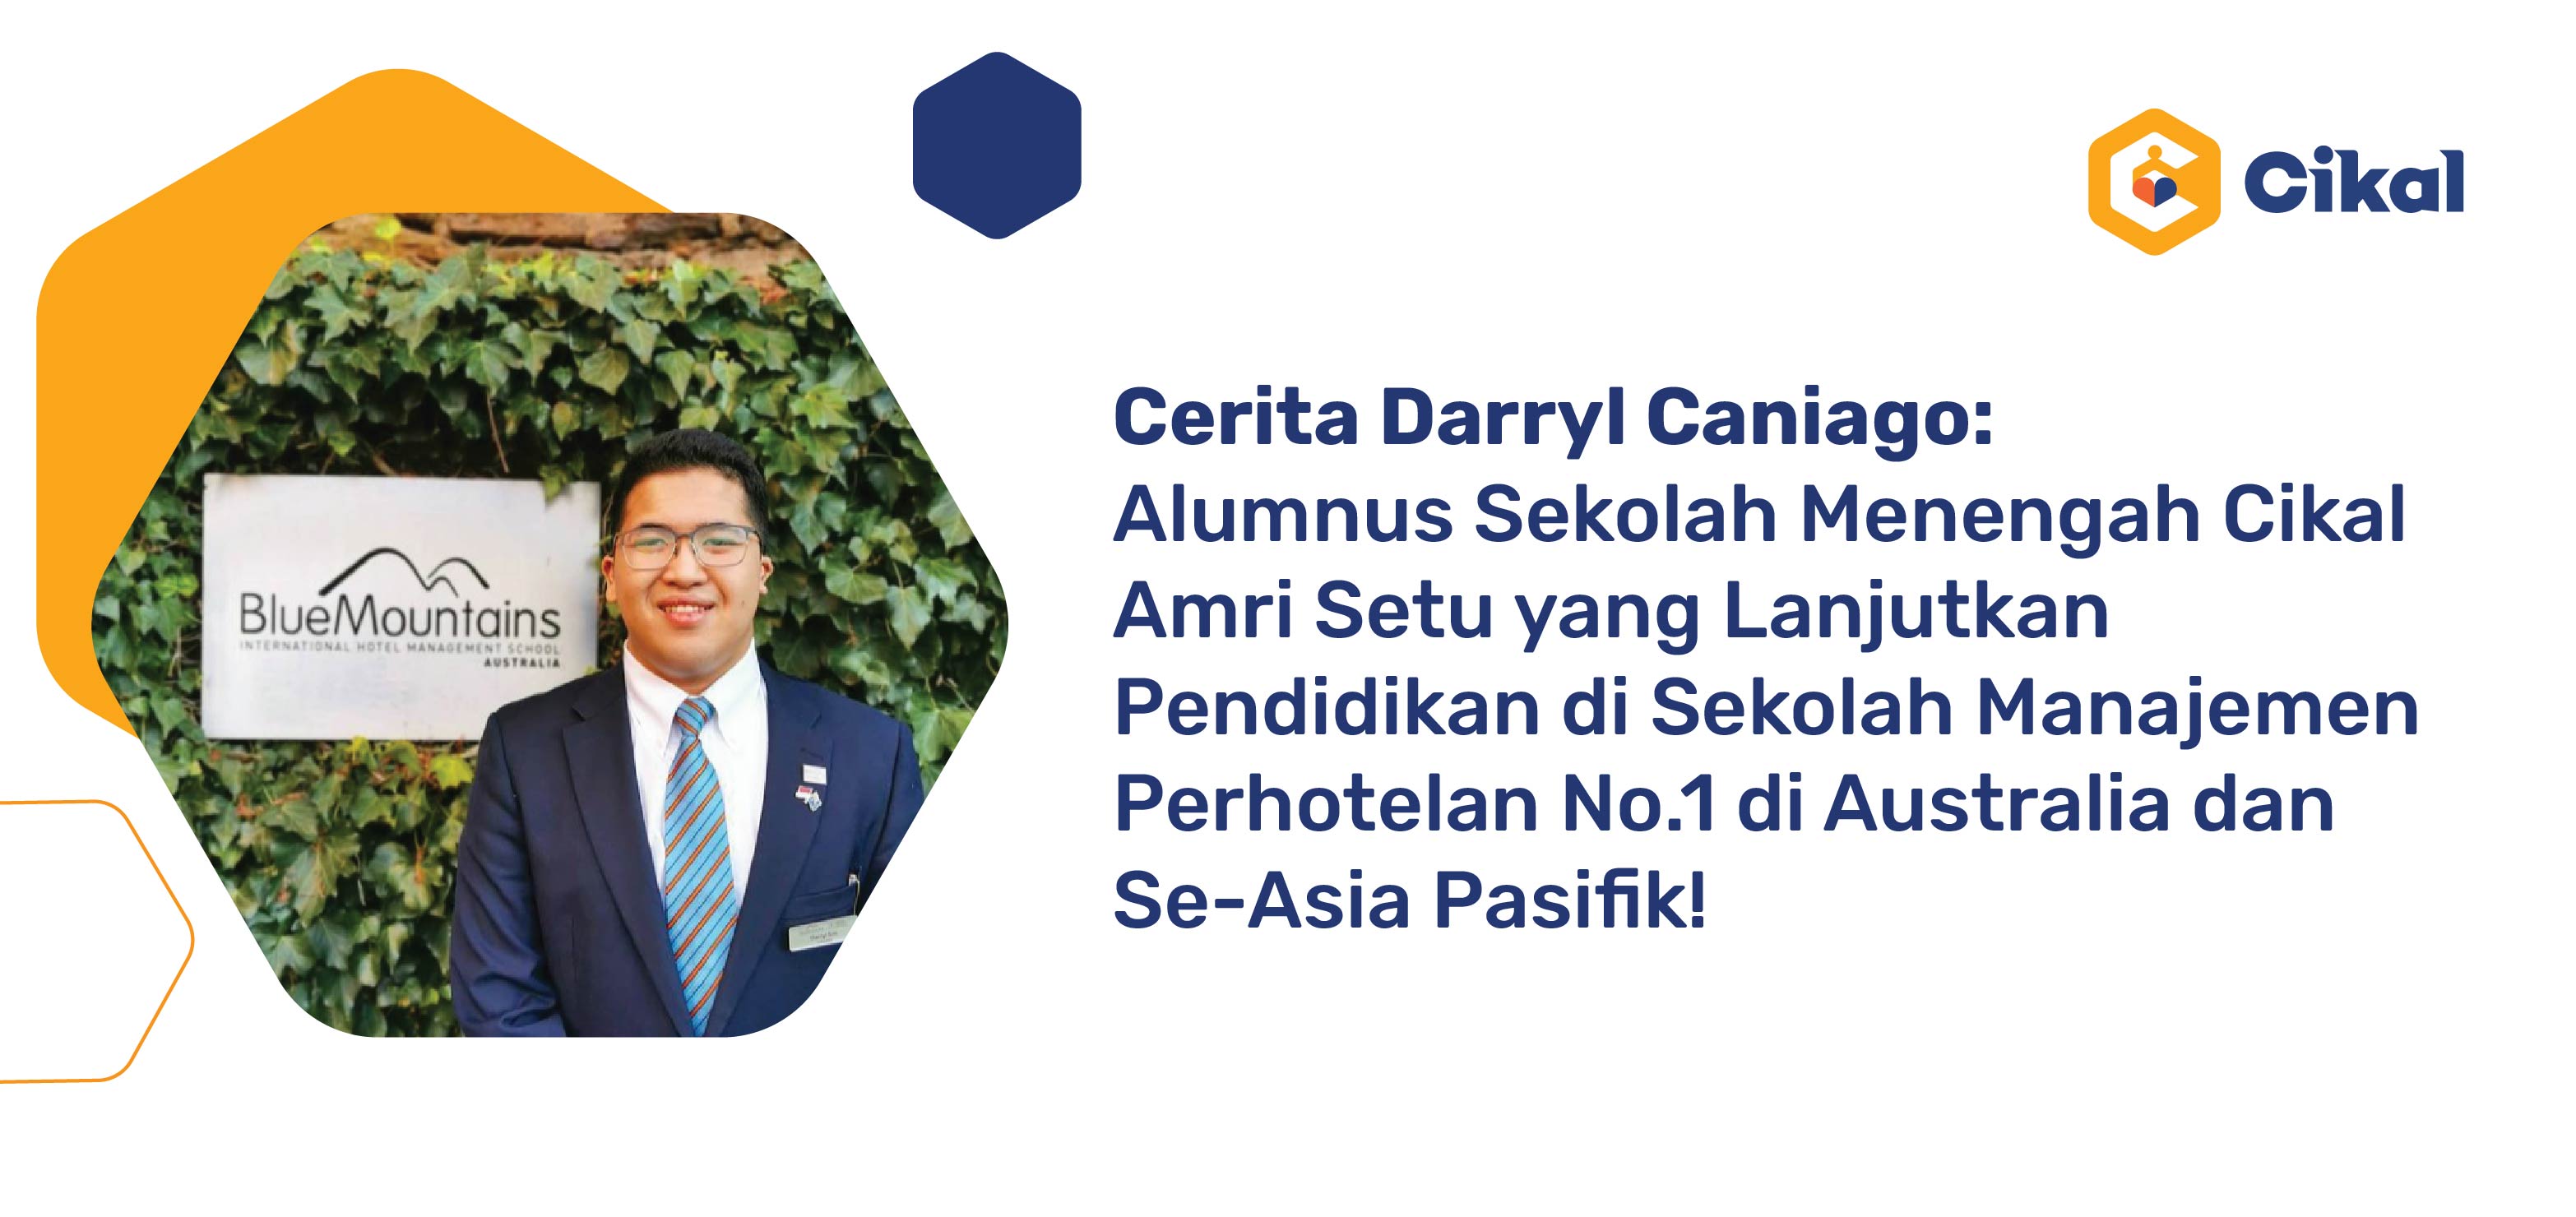 Cerita Darryl Caniago: Alumnus Sekolah Menengah Cikal Amri Setu yang Lanjutkan Pendidikan di Sekolah Manajemen Perhotelan No.1 di Australia dan Se-Asia Pasifik! 